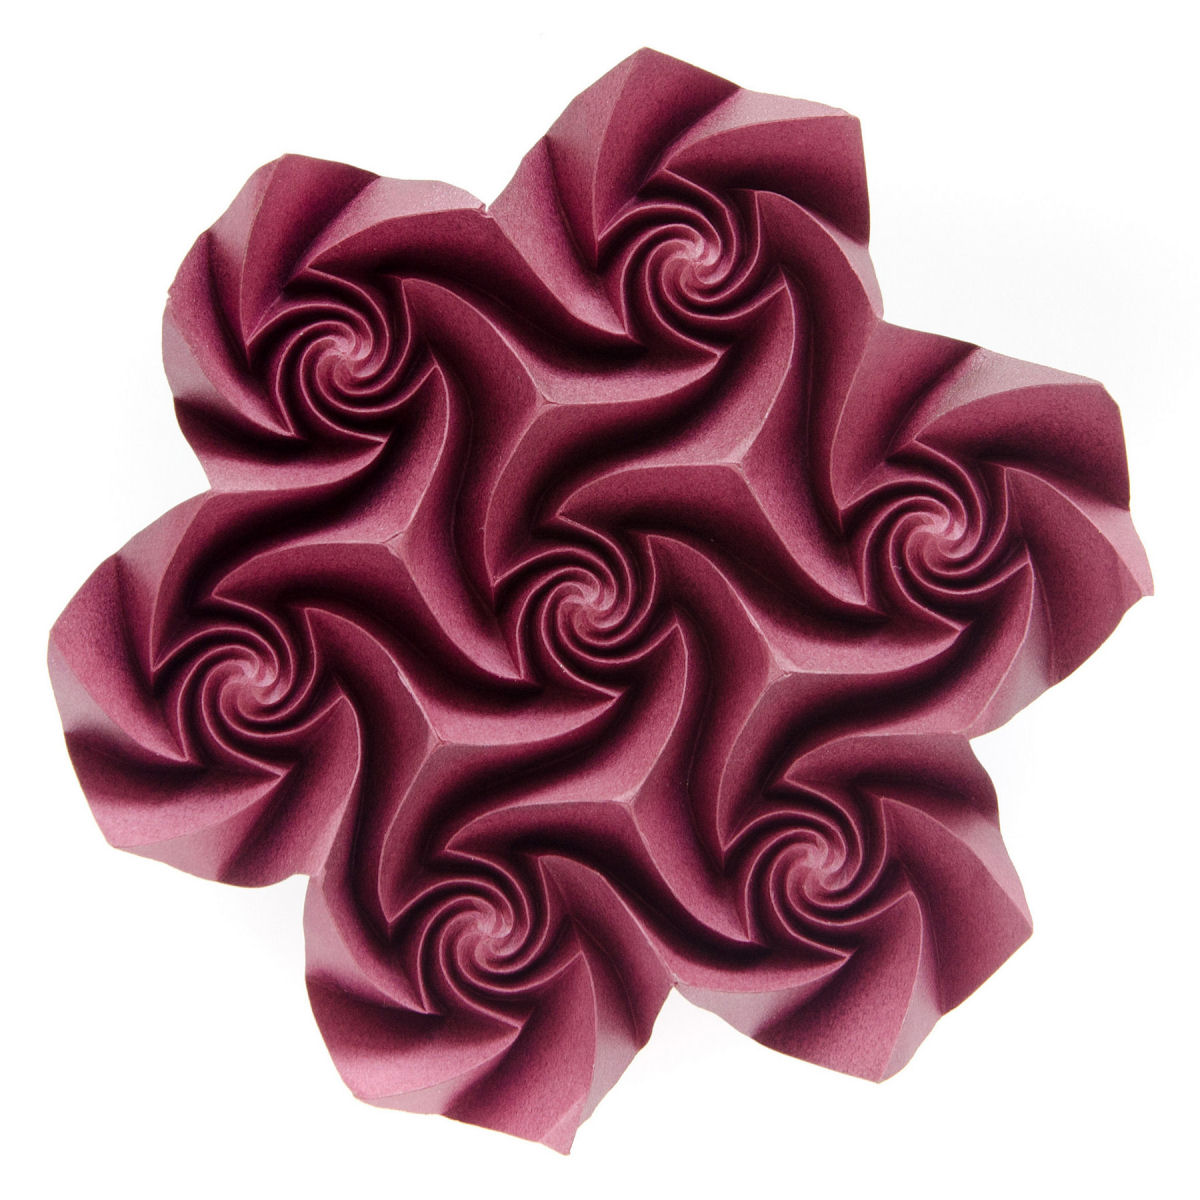 Os inacreditveis origamis tesselados de uma artista russa 09